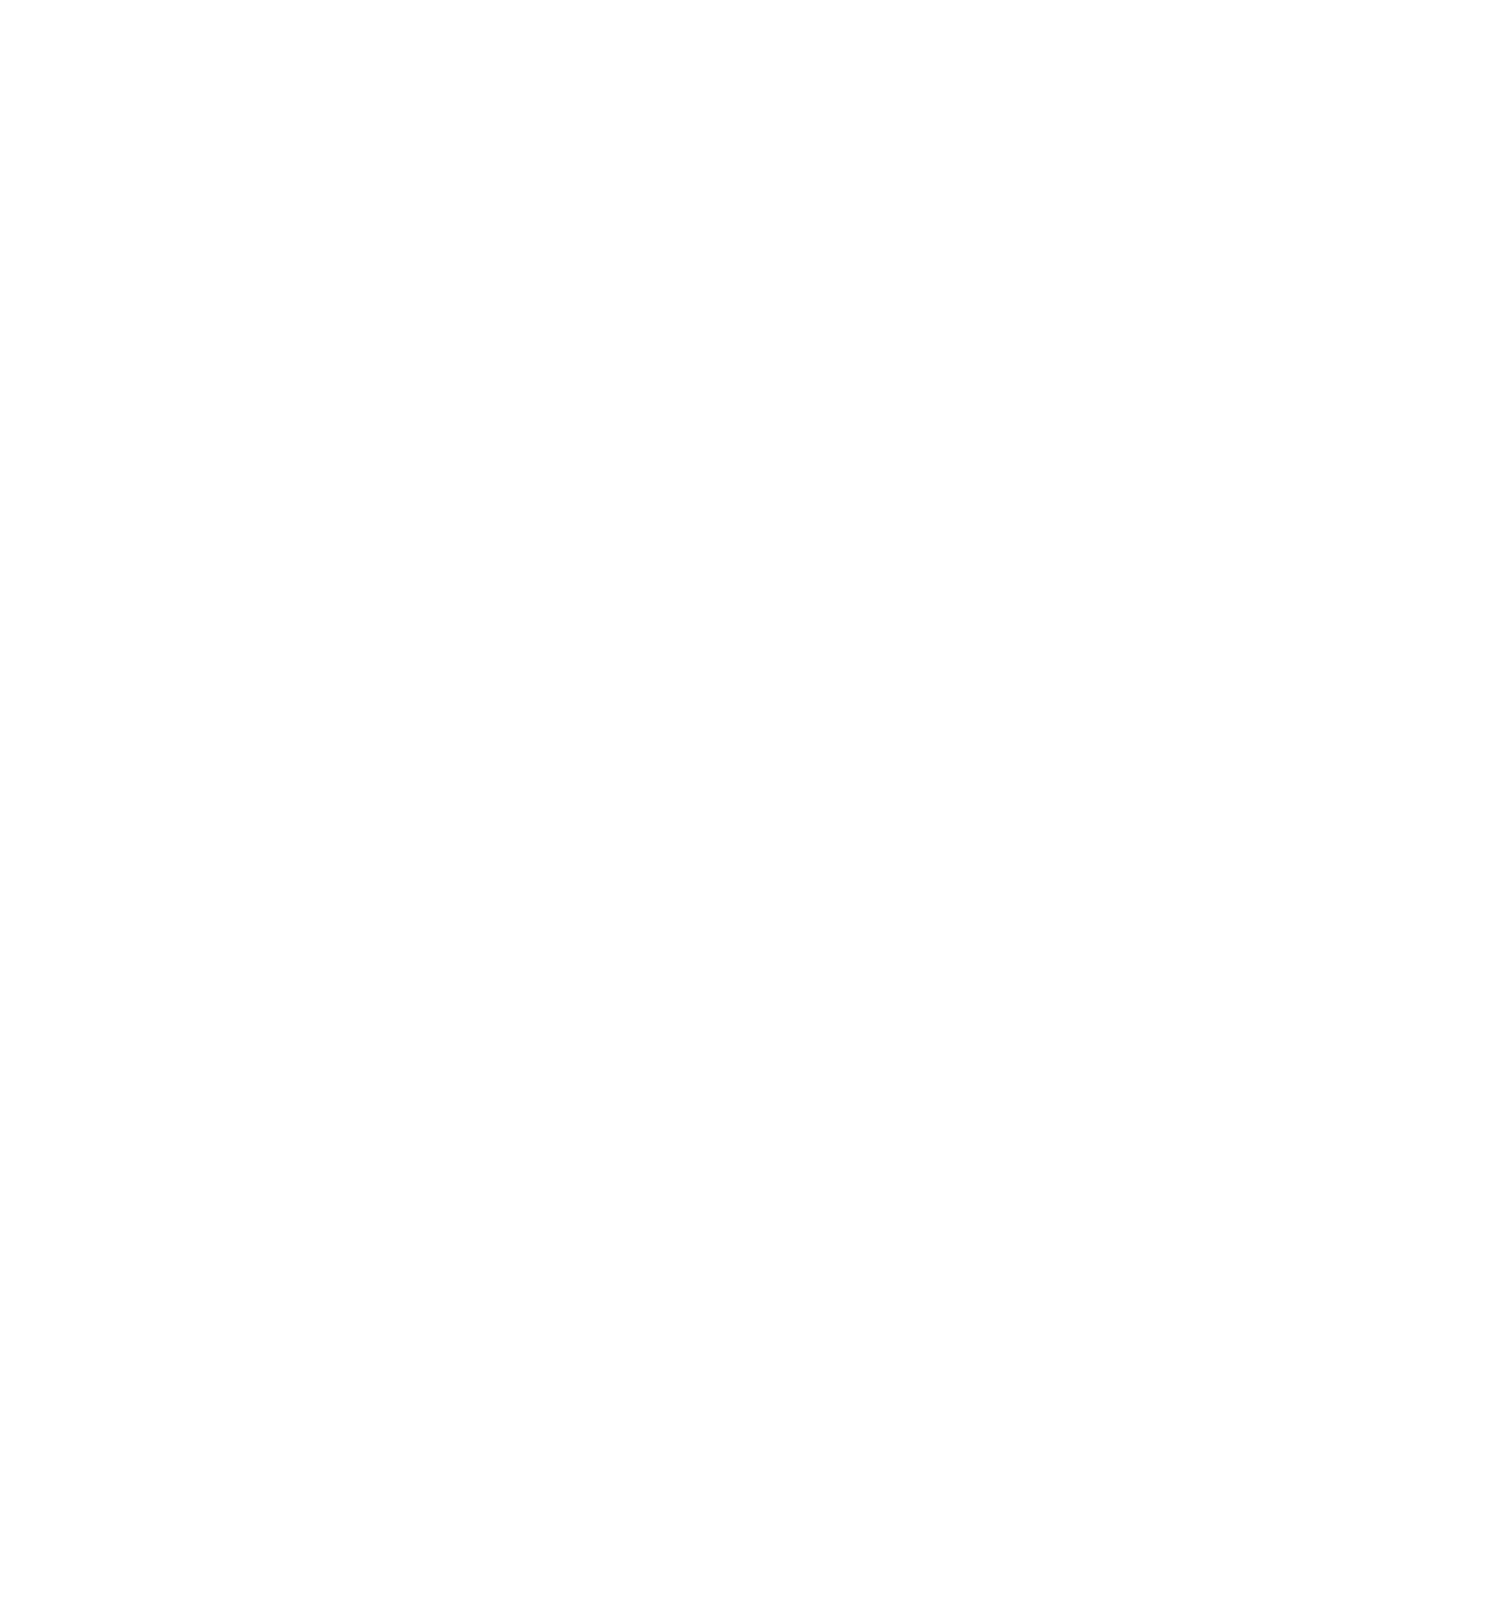 Market Hill Round Top